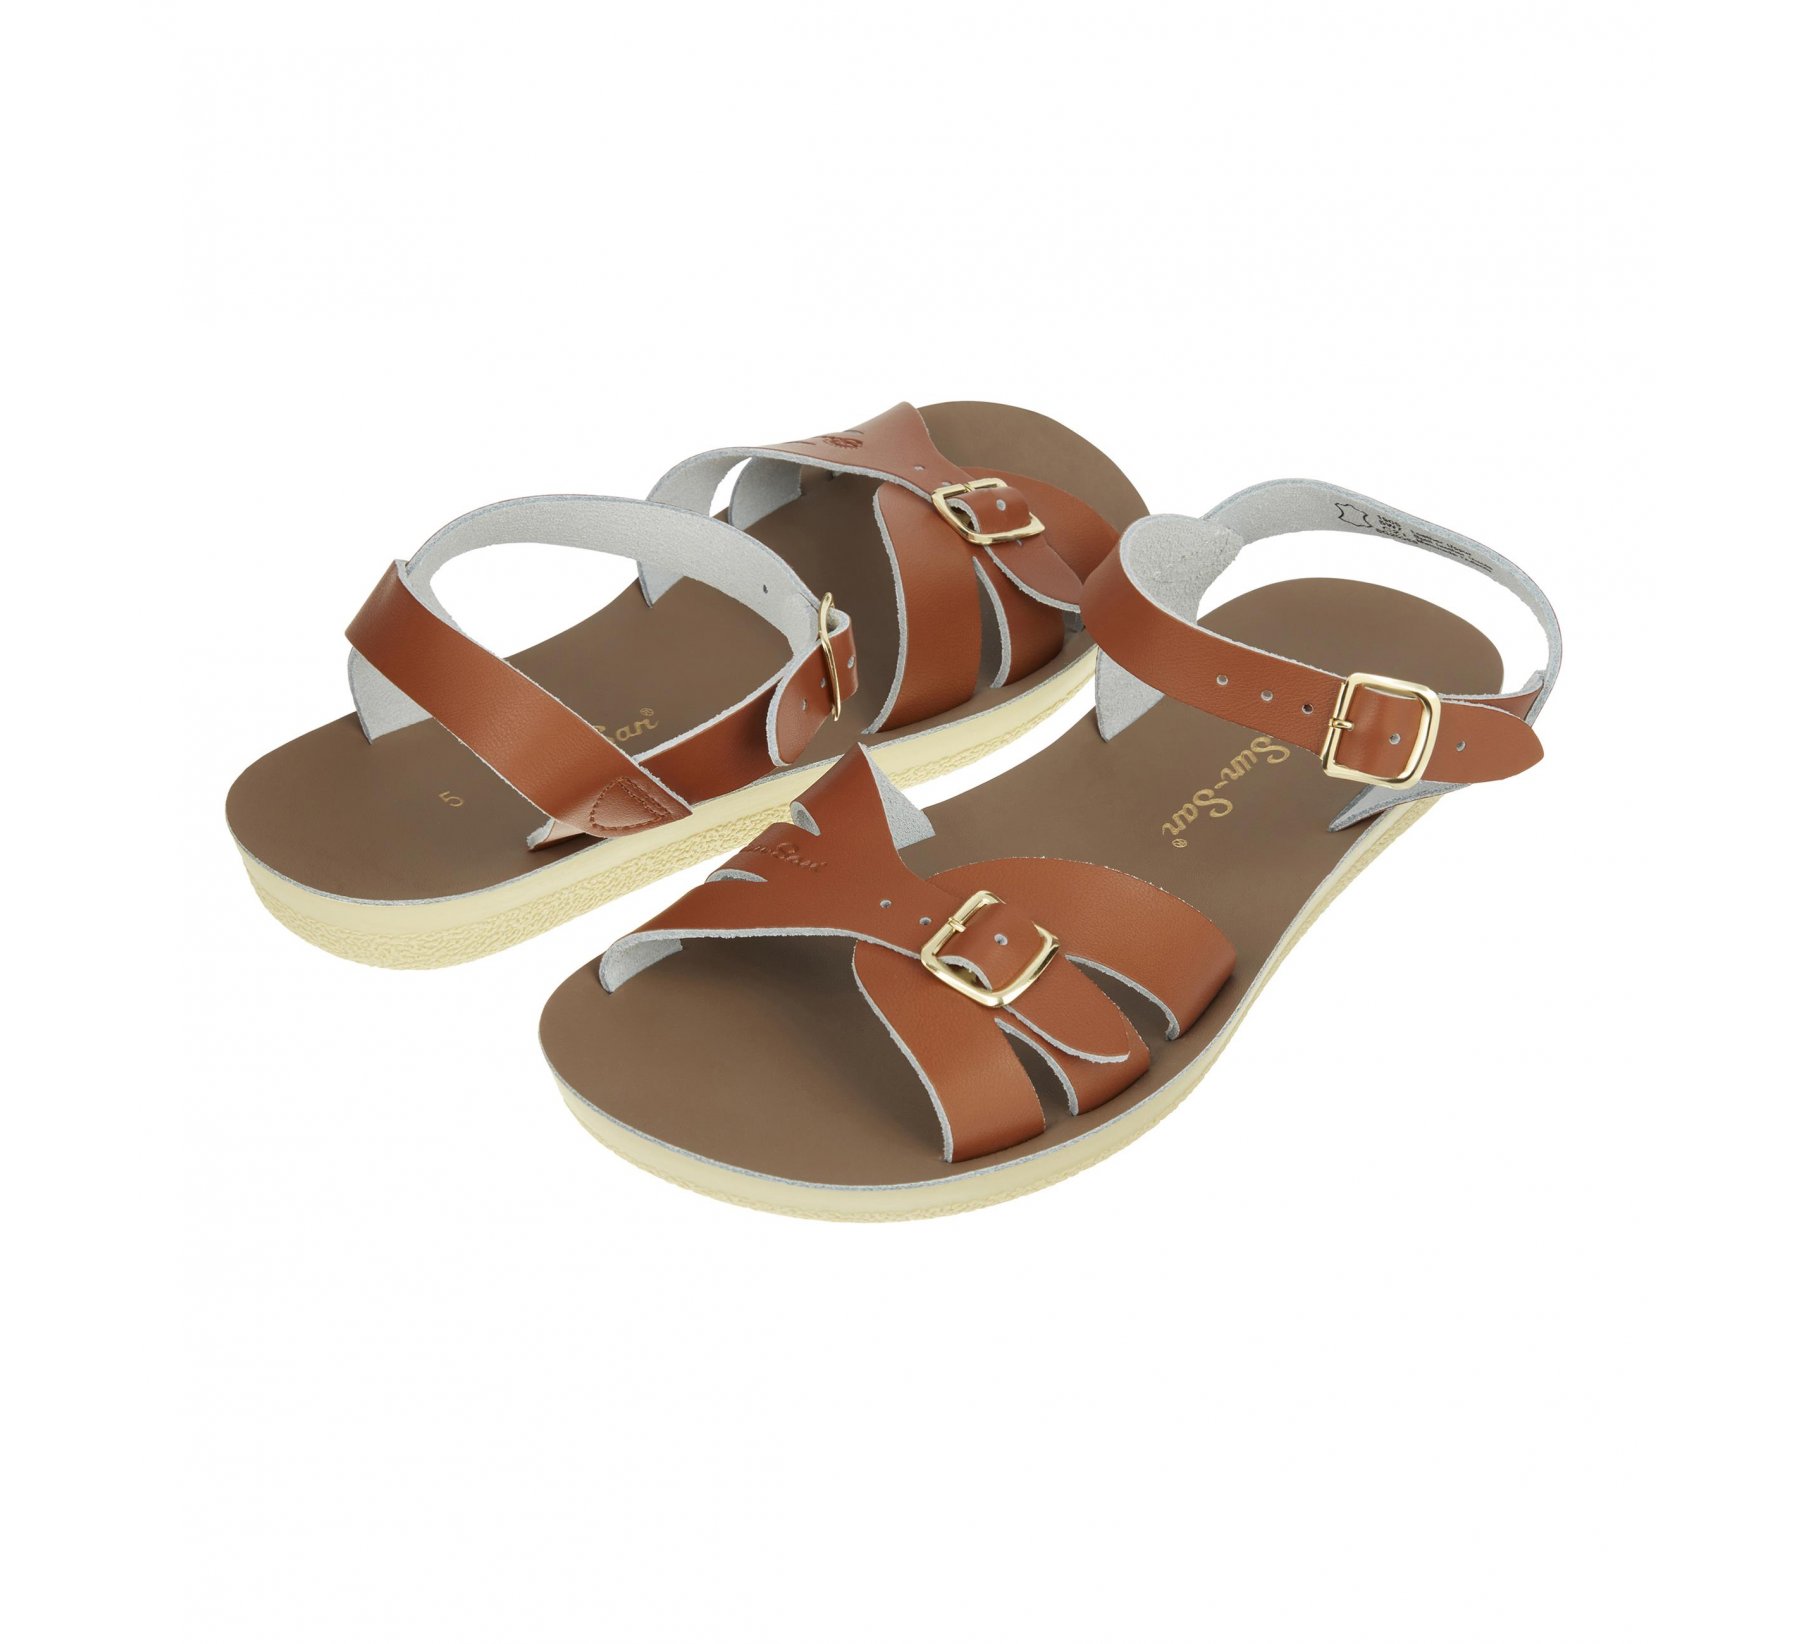 Boardwalk Damens Sandalen in Tan - Salt Water Sandals